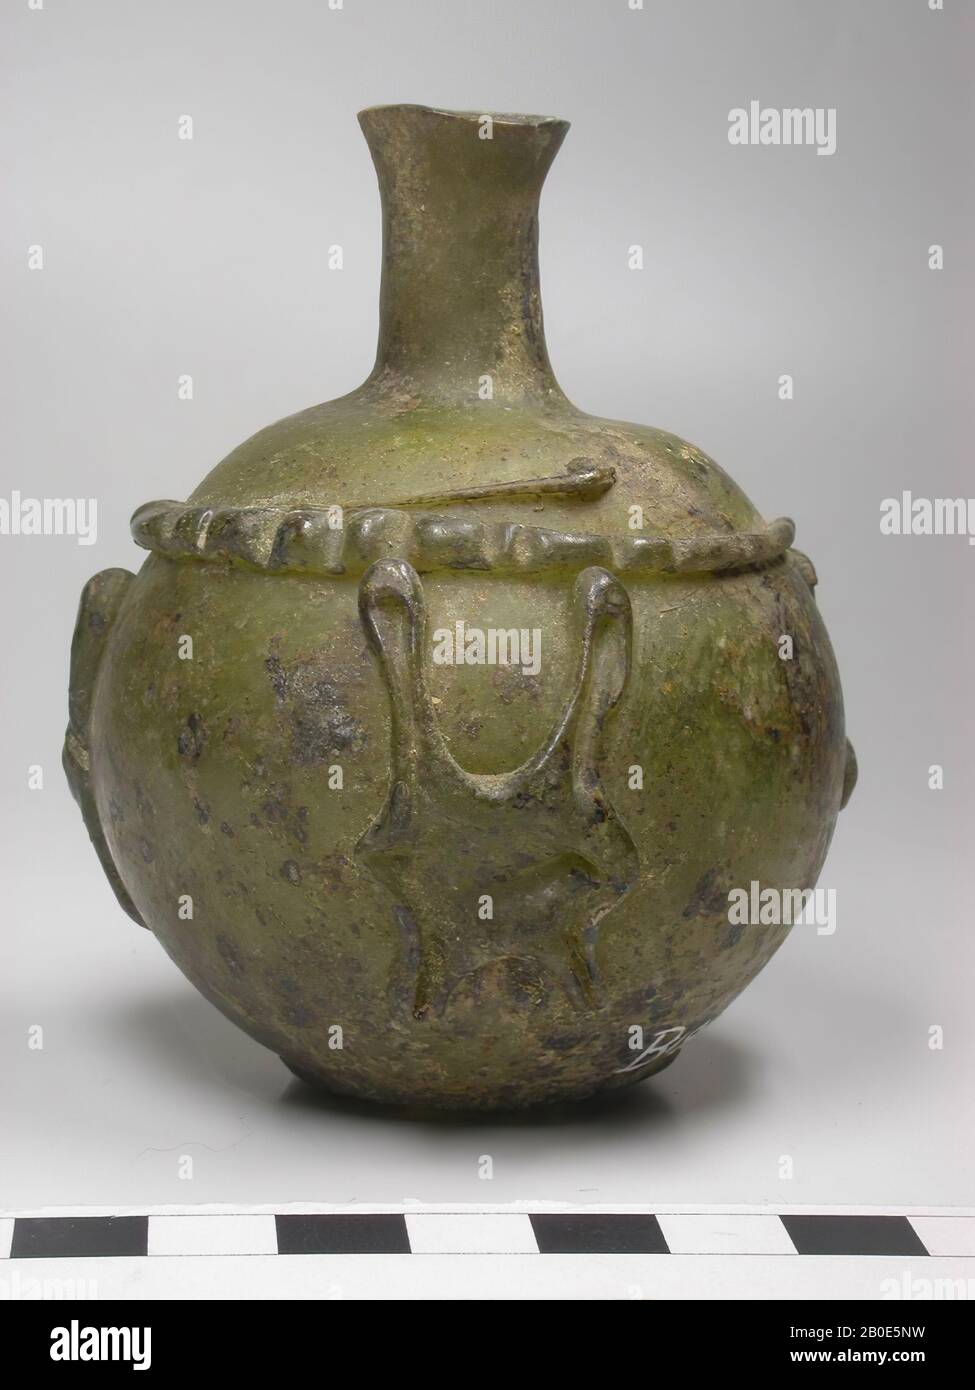 Tubby Flasche olivgrünes Glas, mit geschmolzenen Glasdrähten nach dem Vorbild der Zange verziert, aus denen sich am Bauch drei Figurinen gebildet haben, die Tierfelle darstellen., Geschirr, Glas, H 8 cm, D 6,5 cm, Sasanidische Periode 224-651 AD, Syrien Stockfoto